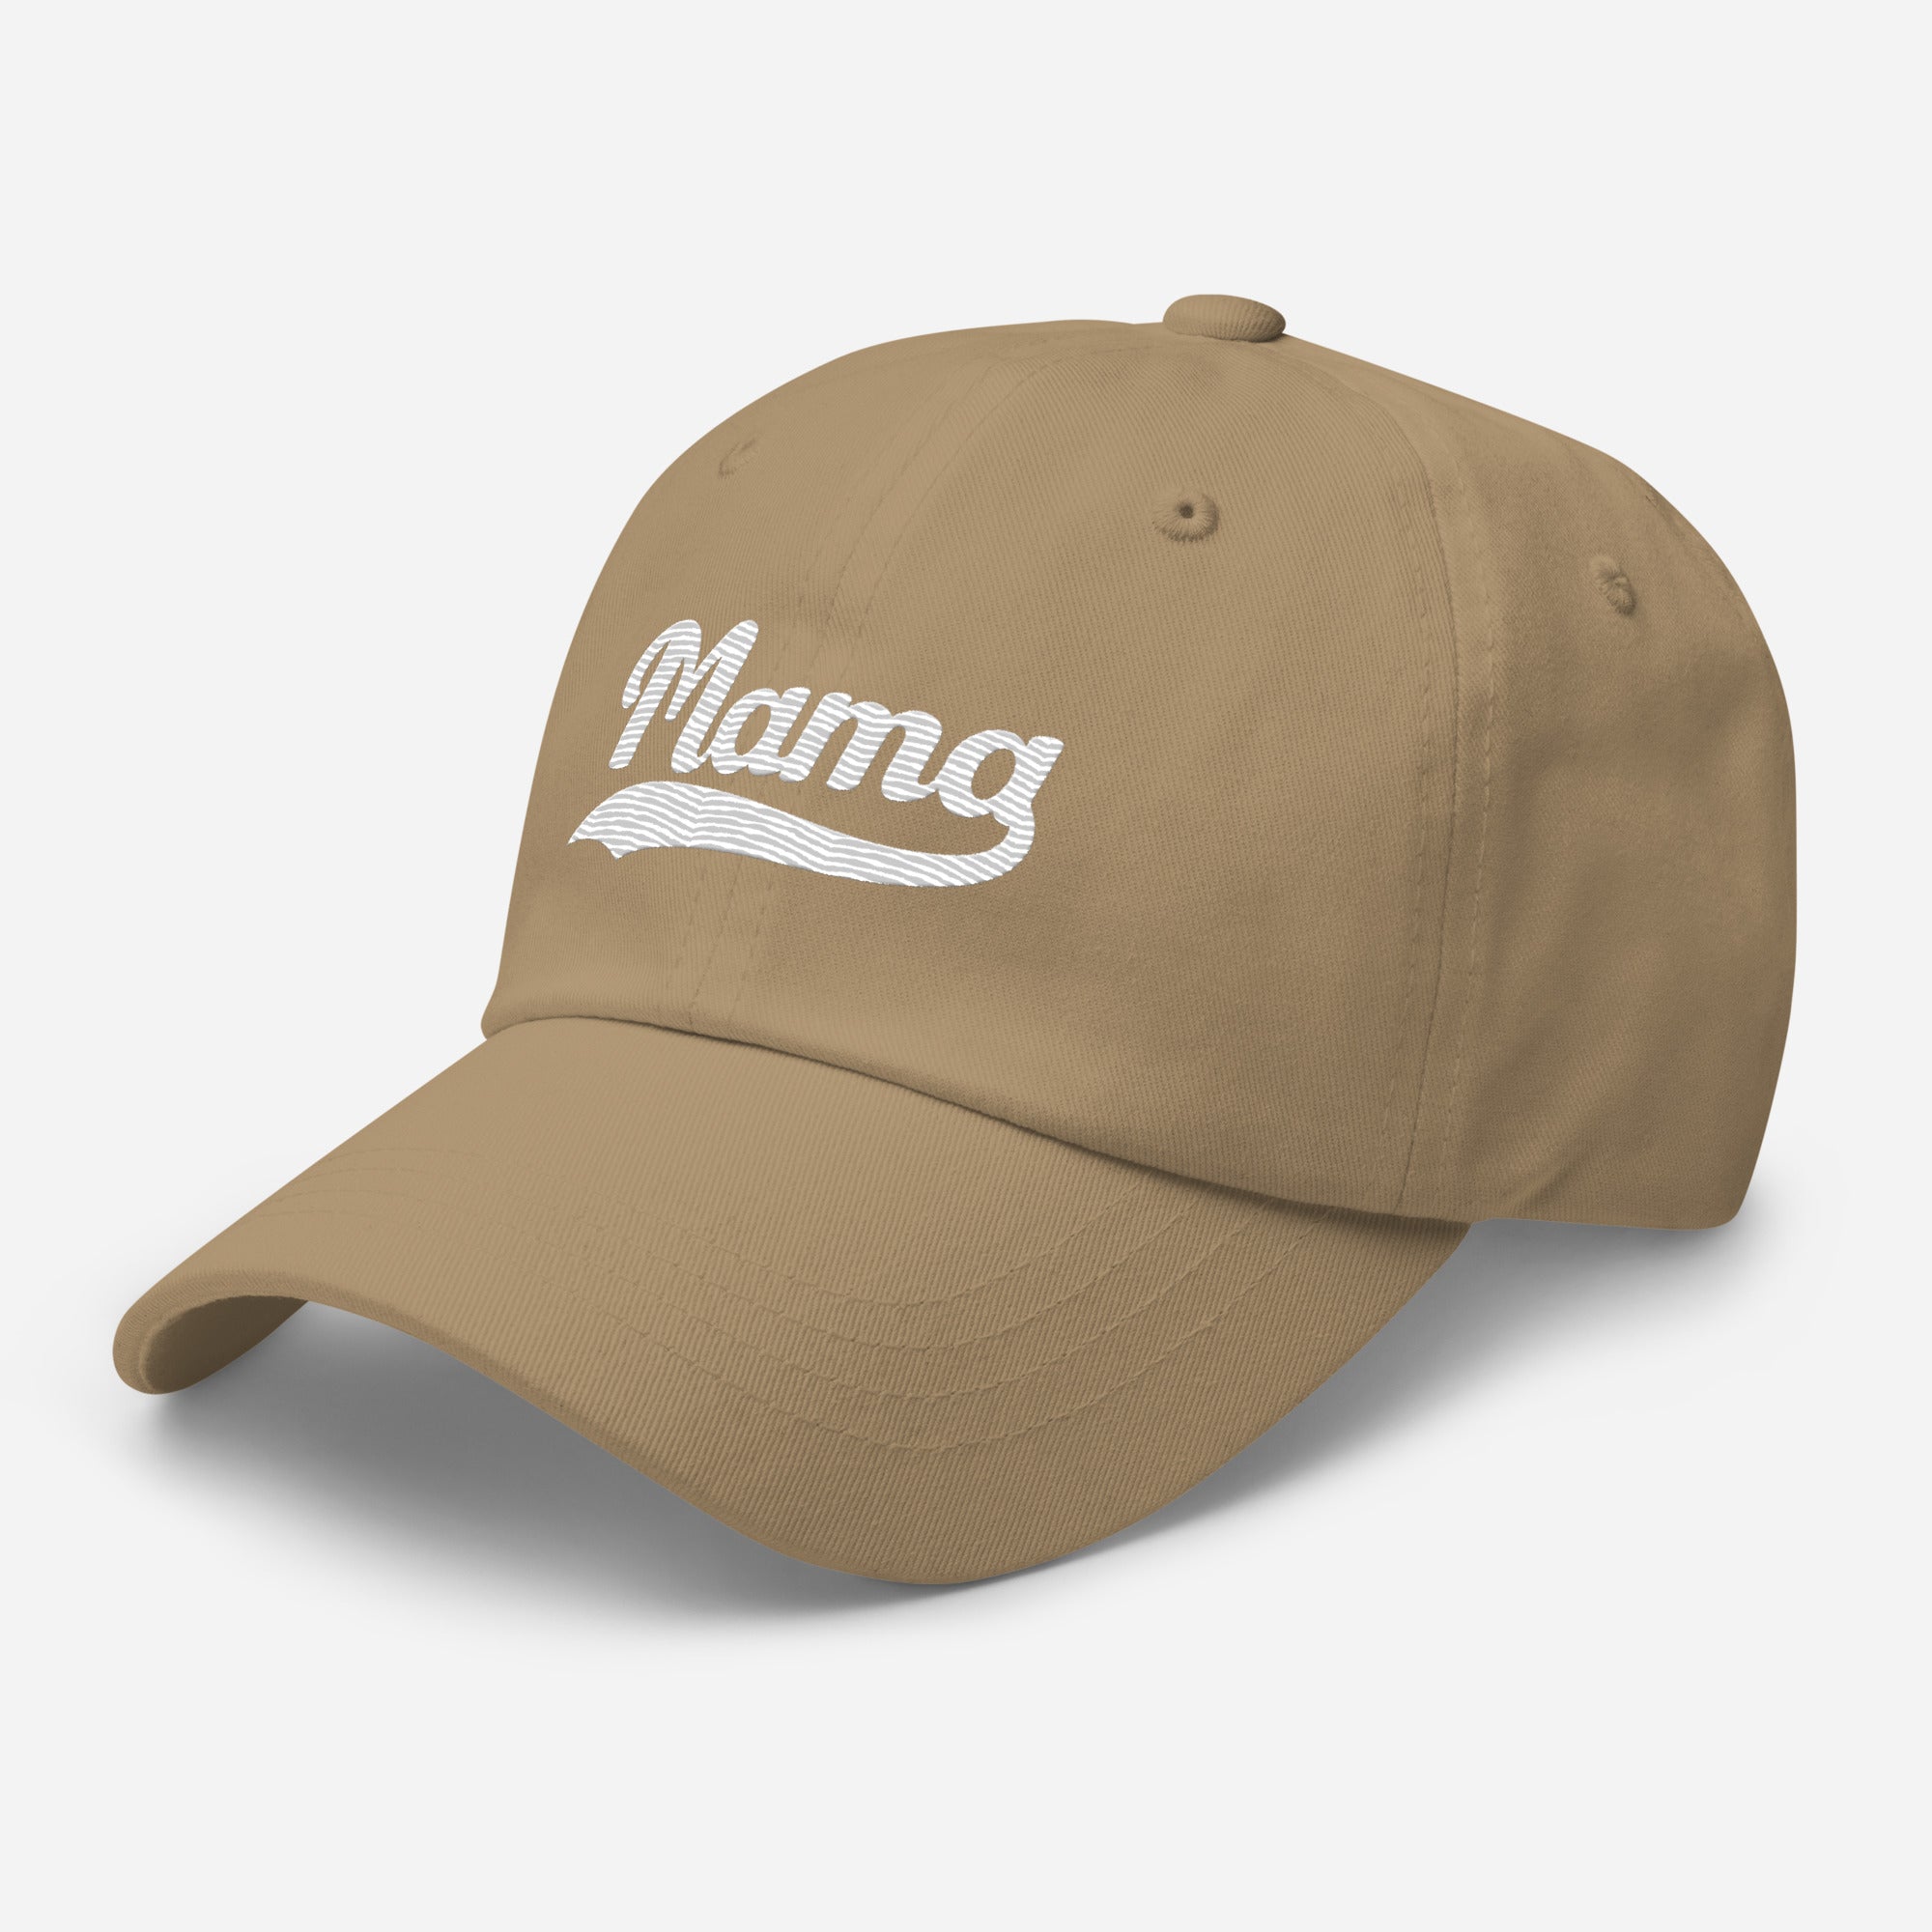 Hat | Mama